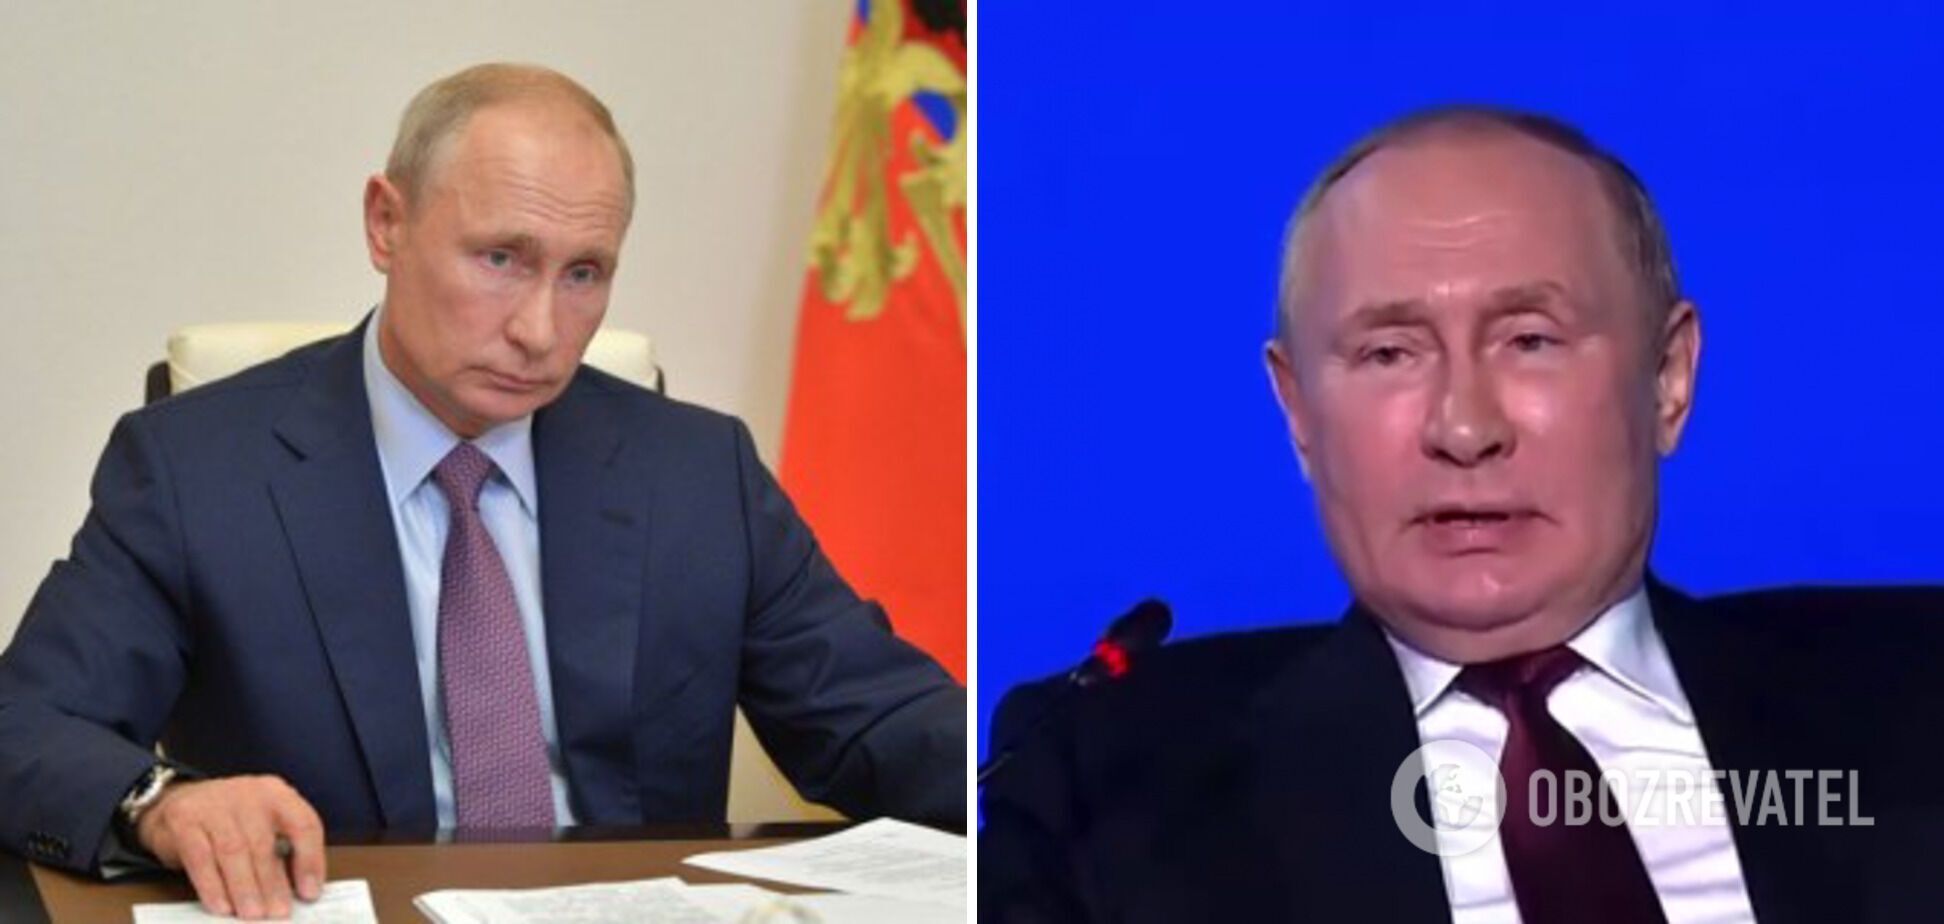 Путін змінився зовні, викликавши нові розмови про хворобу: що не так з обличчям президента РФ